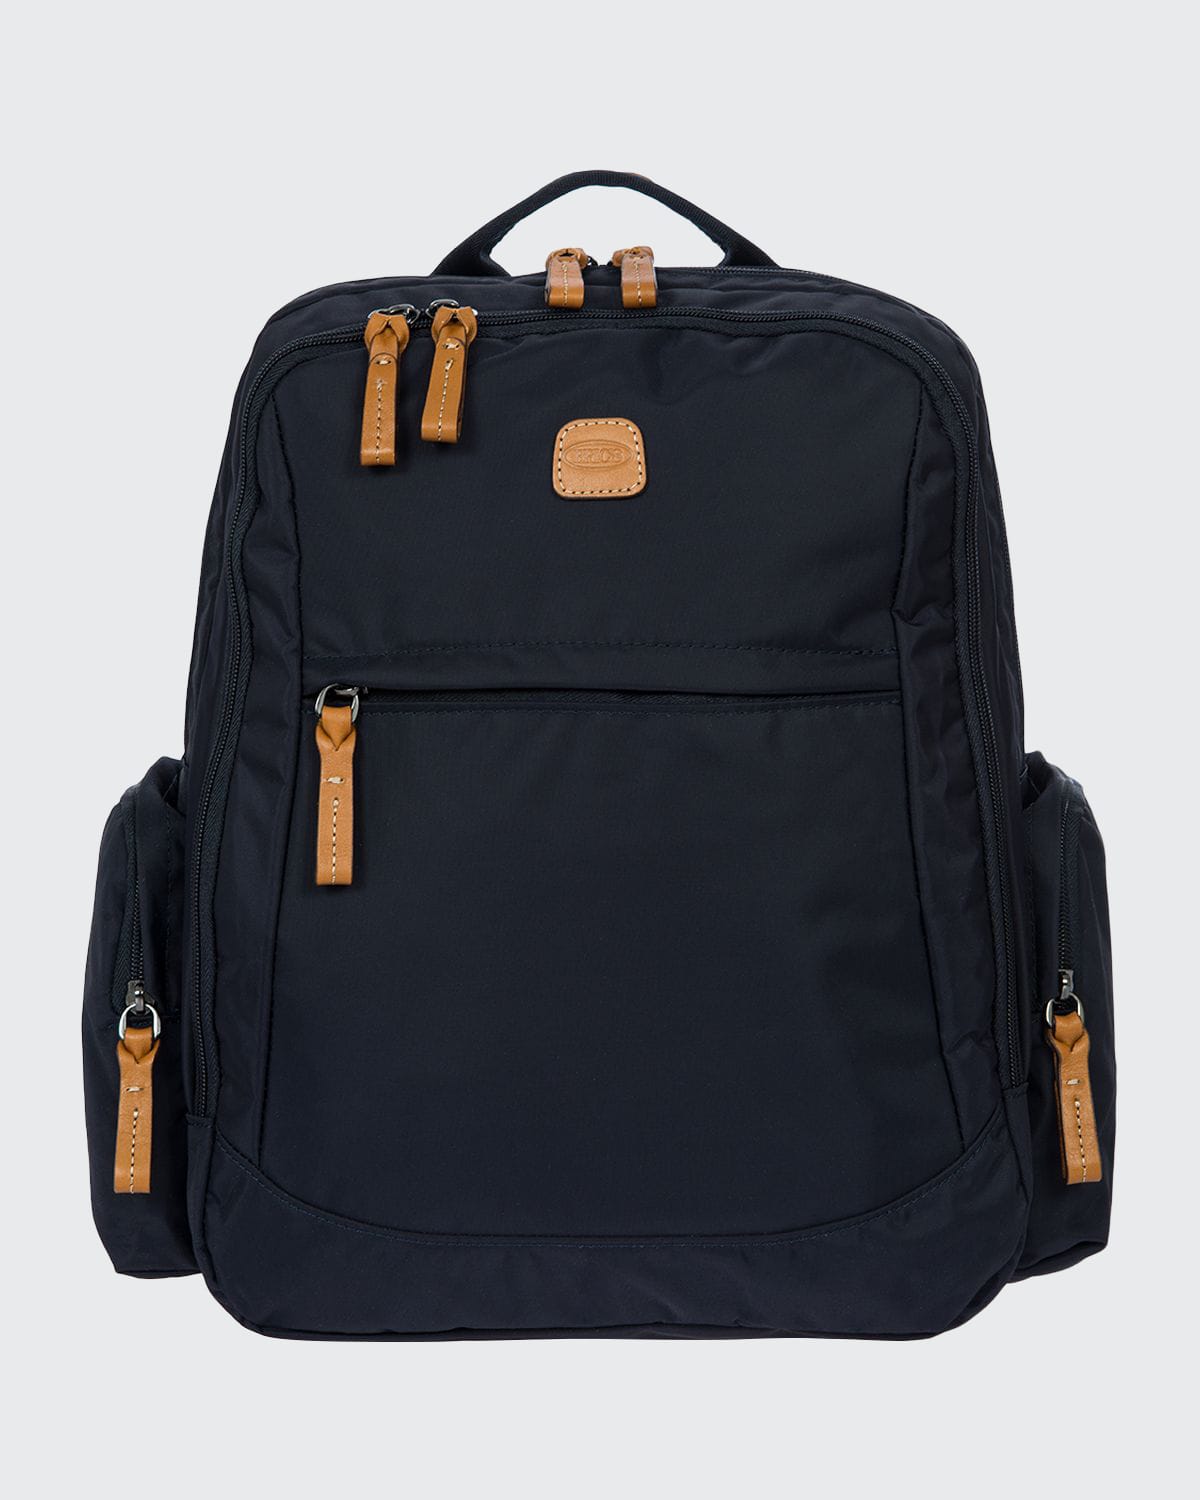 Bric's X-Travel Nomad Nylon Backpack